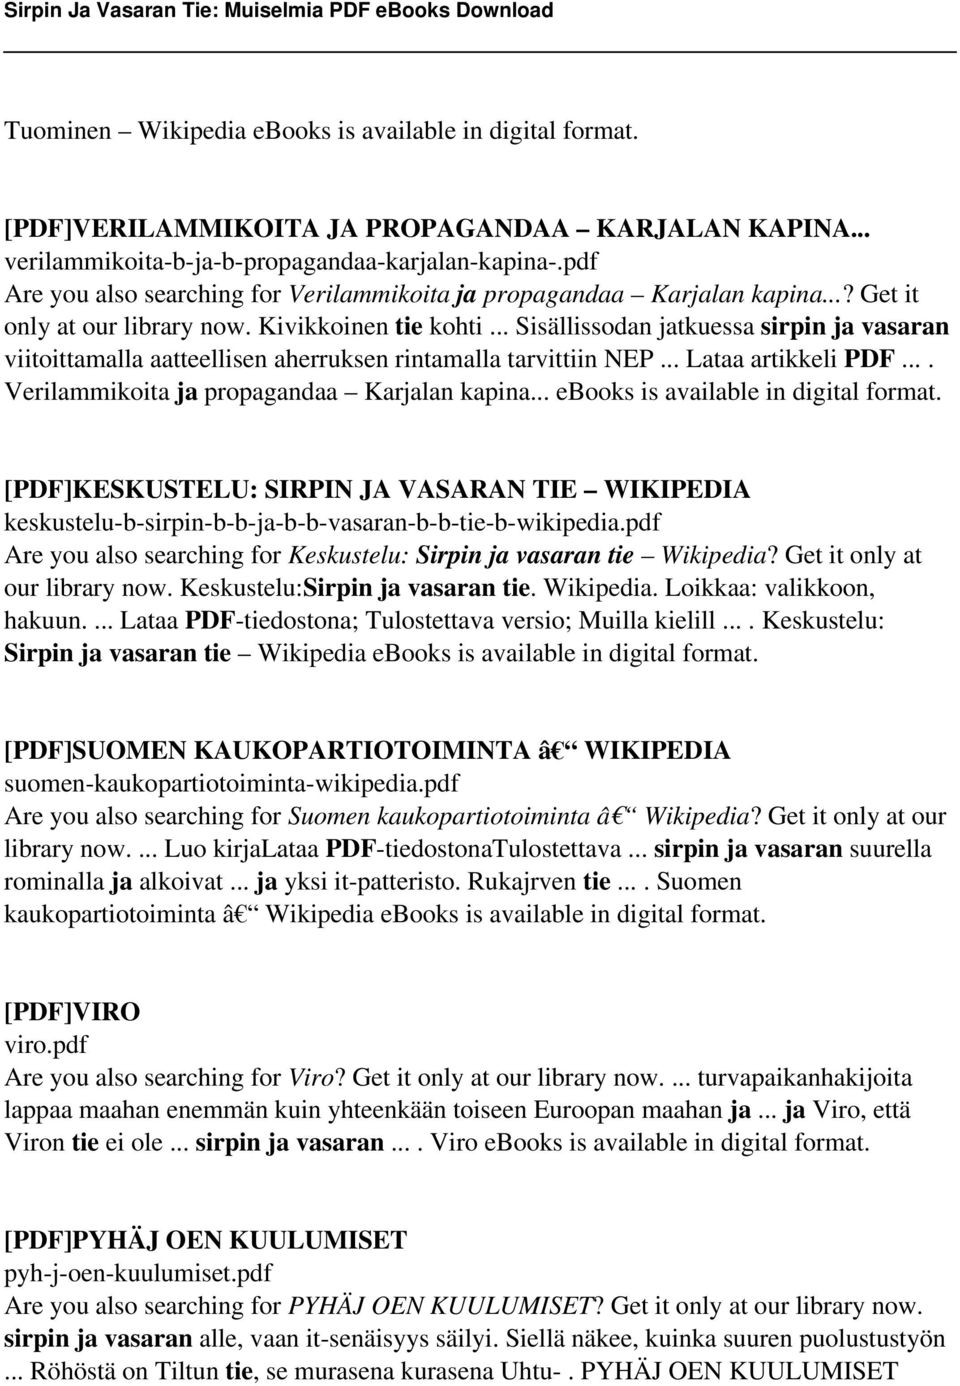 .. Sisällissodan jatkuessa sirpin ja vasaran viitoittamalla aatteellisen aherruksen rintamalla tarvittiin NEP... Lataa artikkeli PDF.... Verilammikoita ja propagandaa Karjalan kapina.